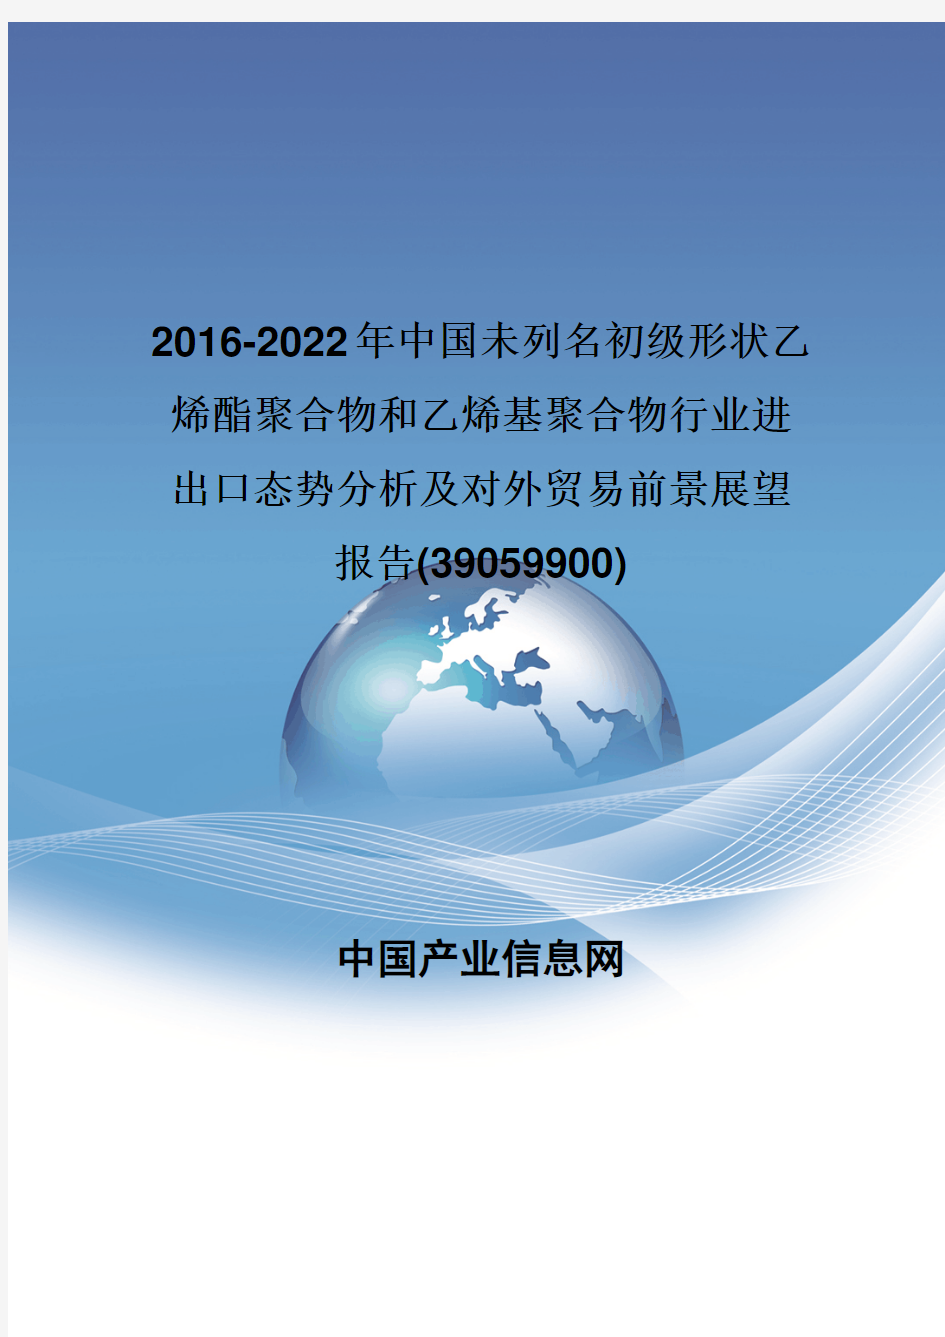 2016-2022年中国未列名初级形状乙烯酯聚合物和乙烯基聚合物行业进出口态势分析报告(39059900)